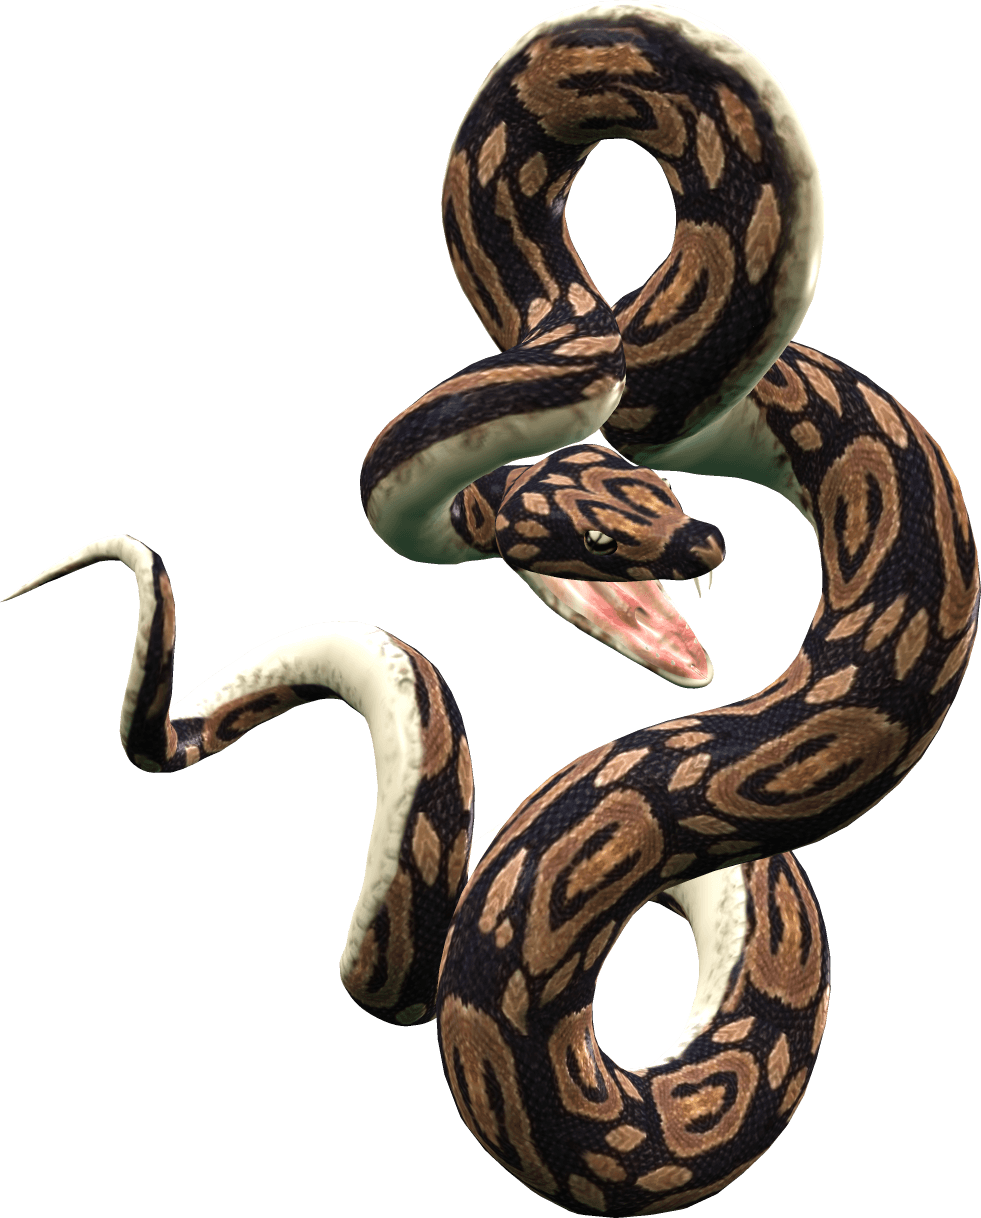 Python Snake Logo - Python Snake PNG Transparent Python Snake.PNG Images. | PlusPNG